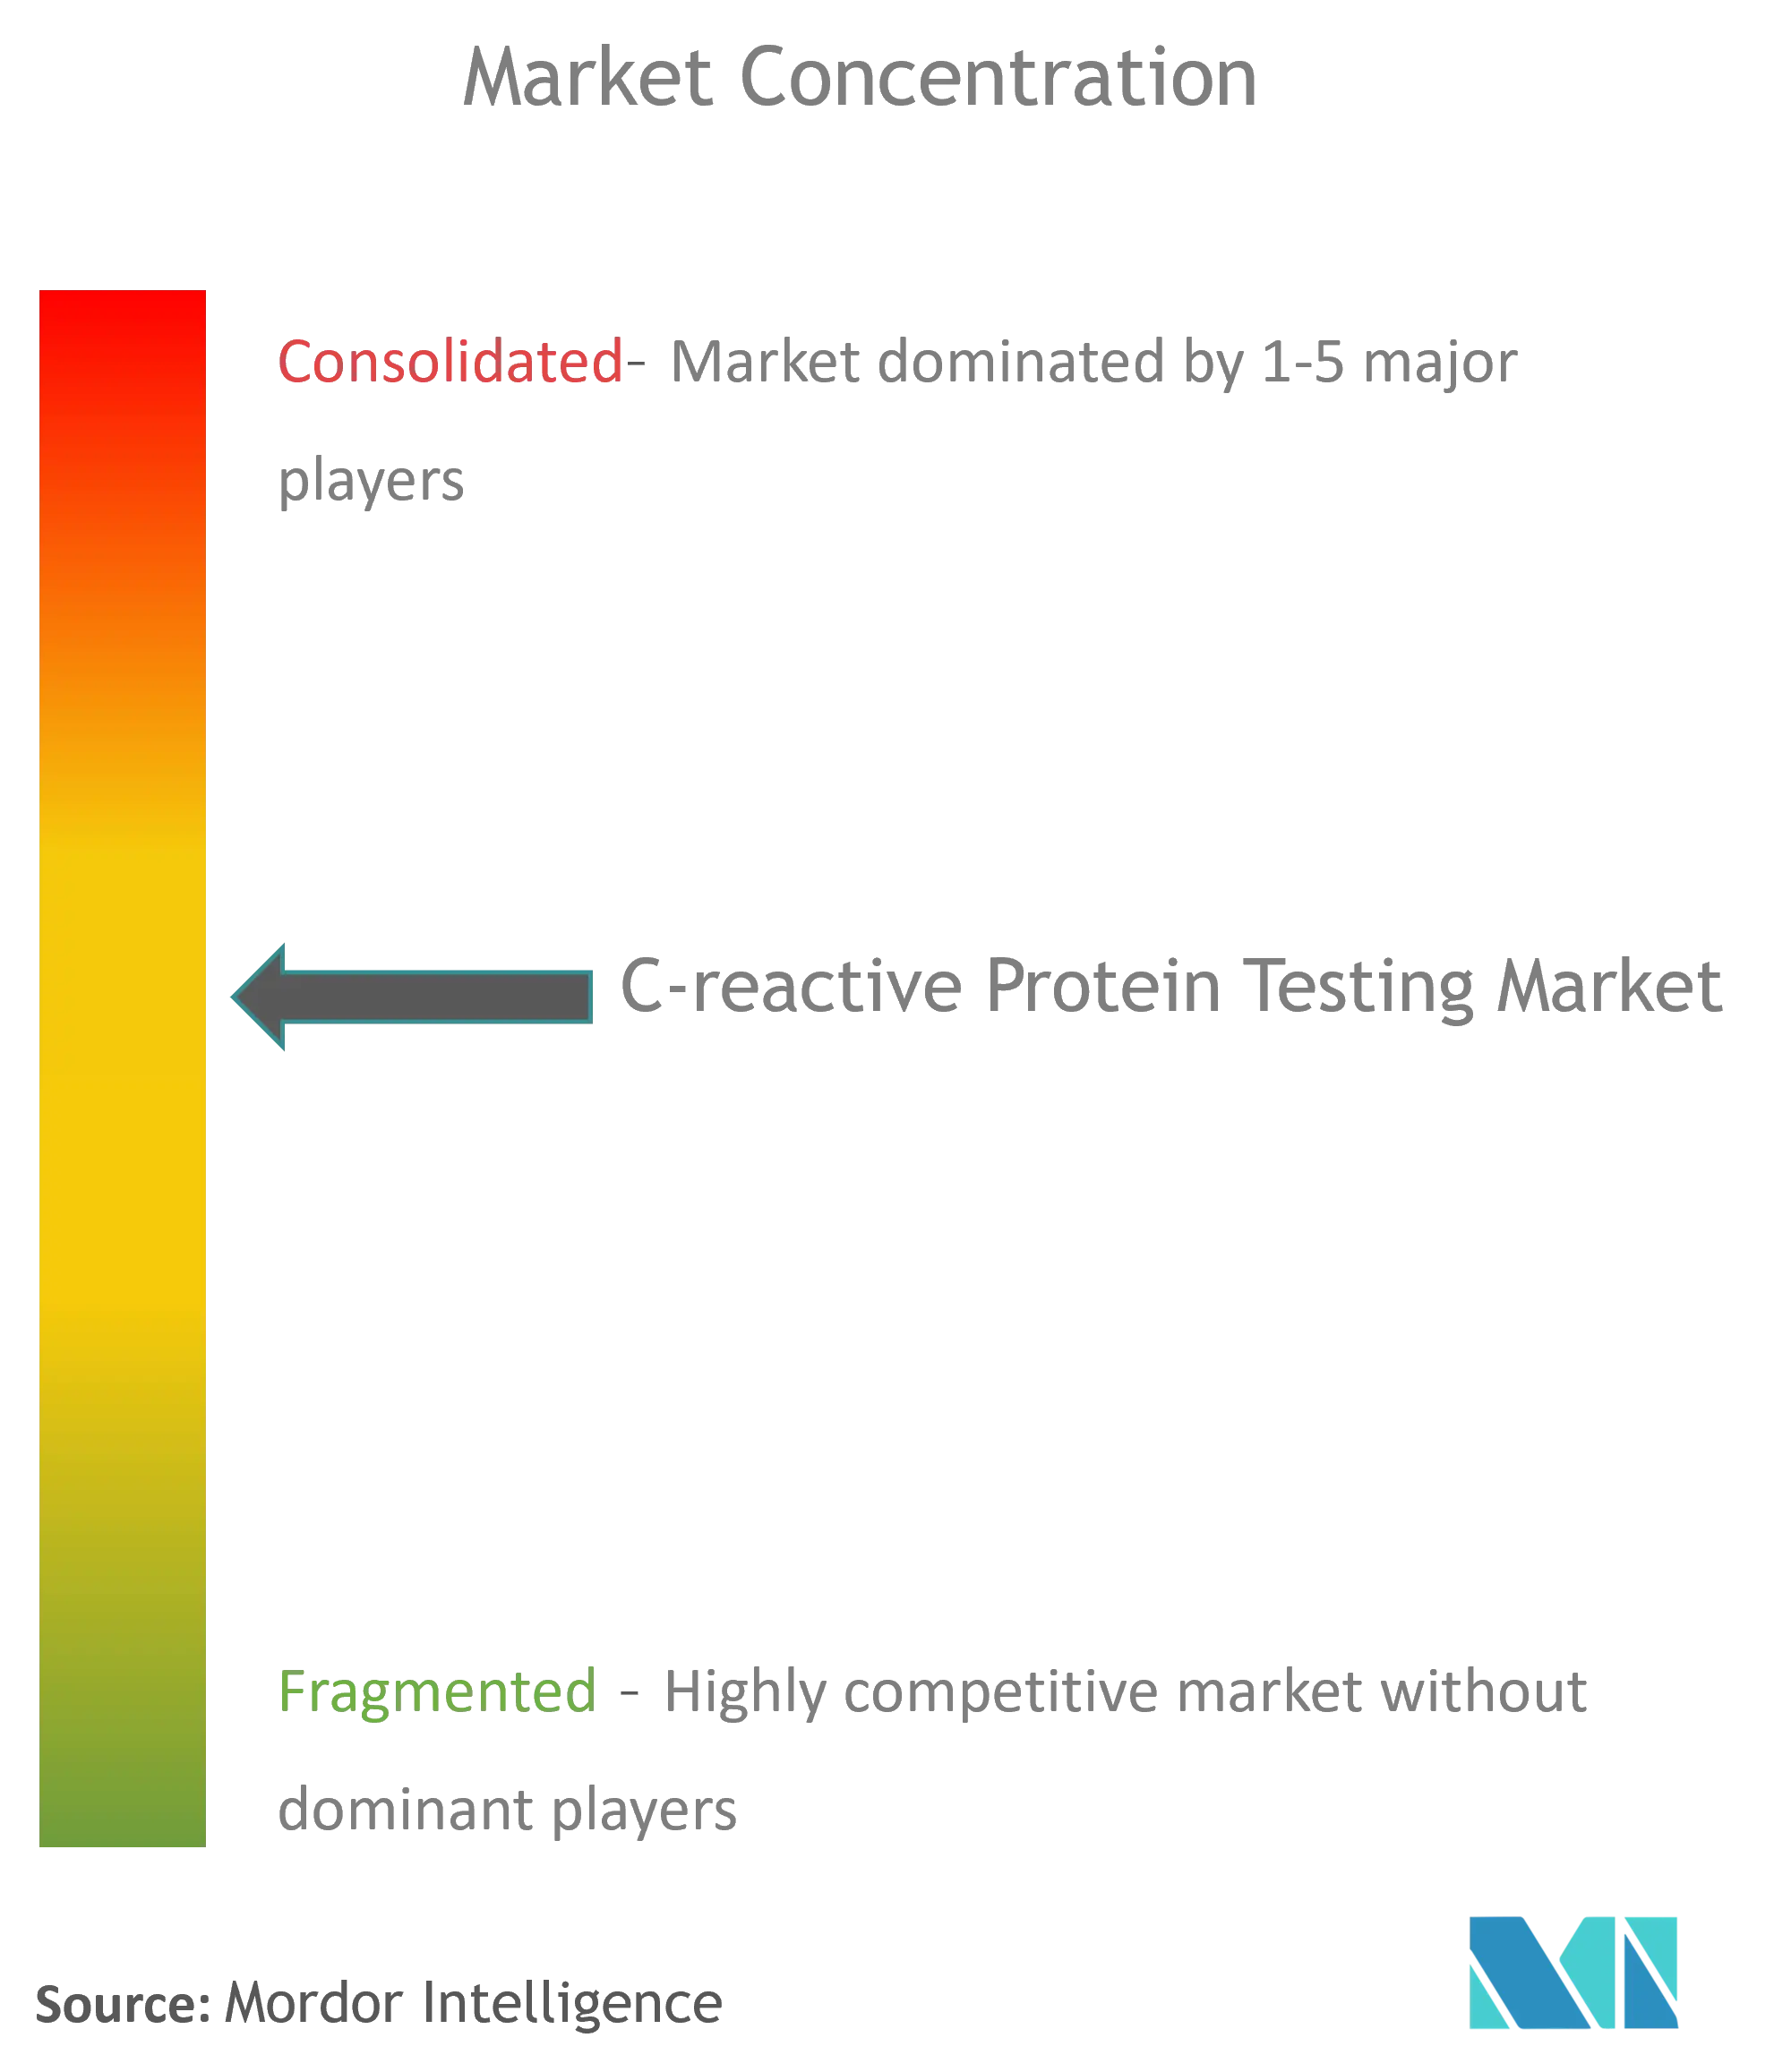 Nồng độ thị trường thử nghiệm protein phản ứng C